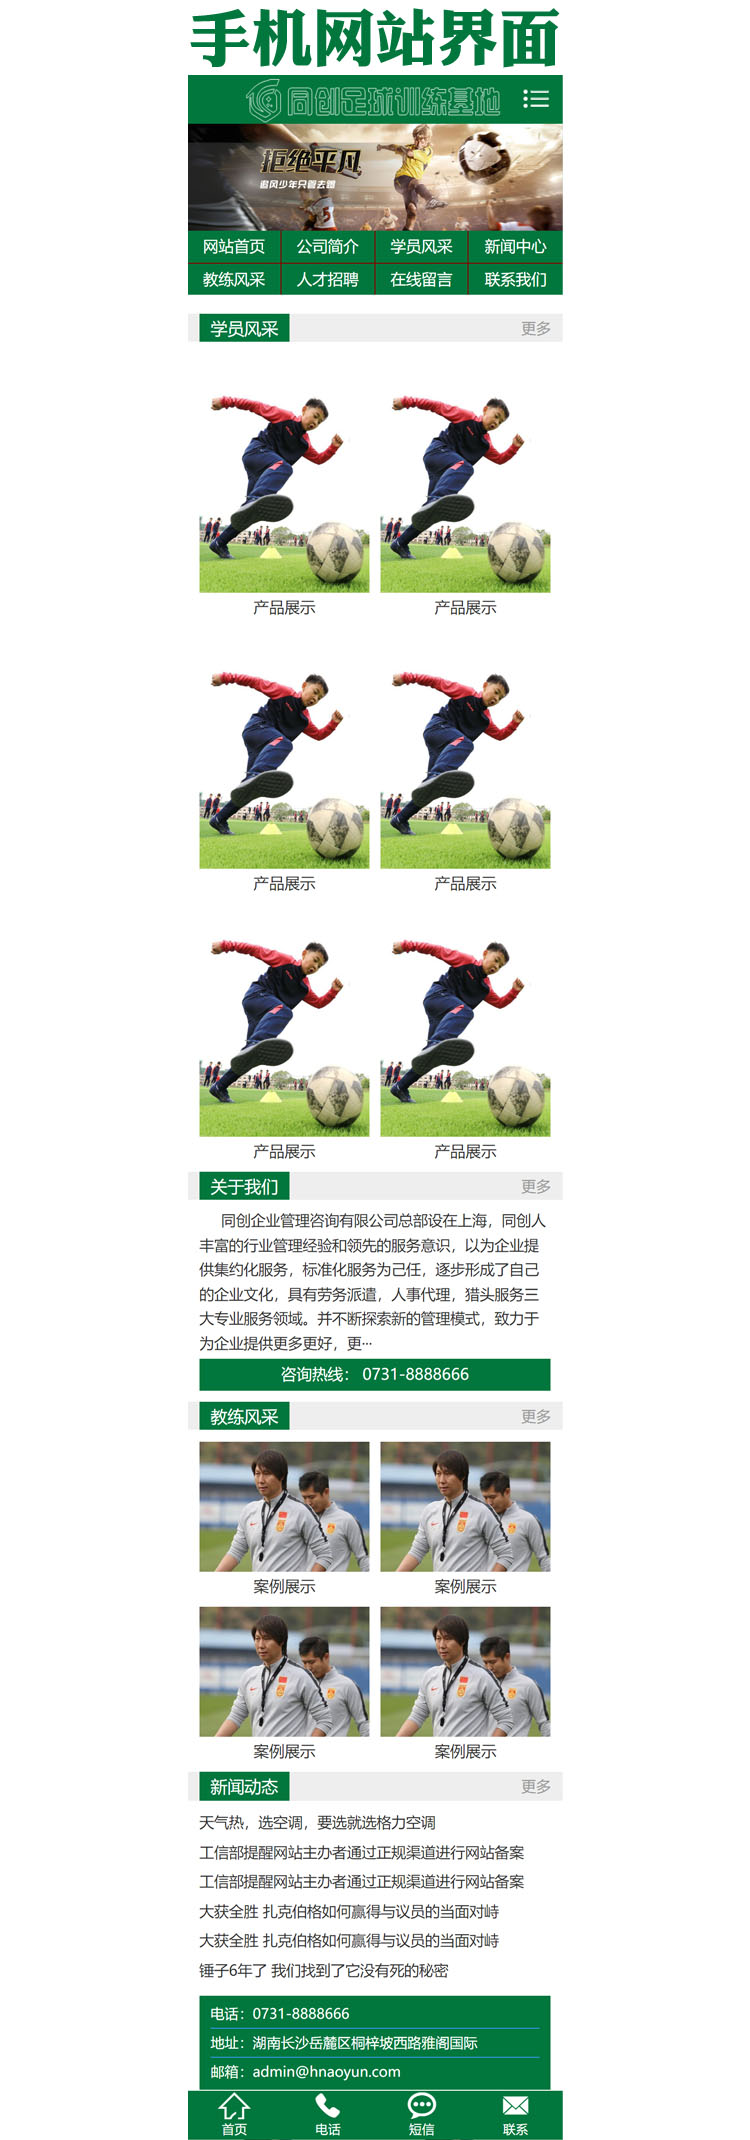 营销型体育培训班网站源码-XX097-3